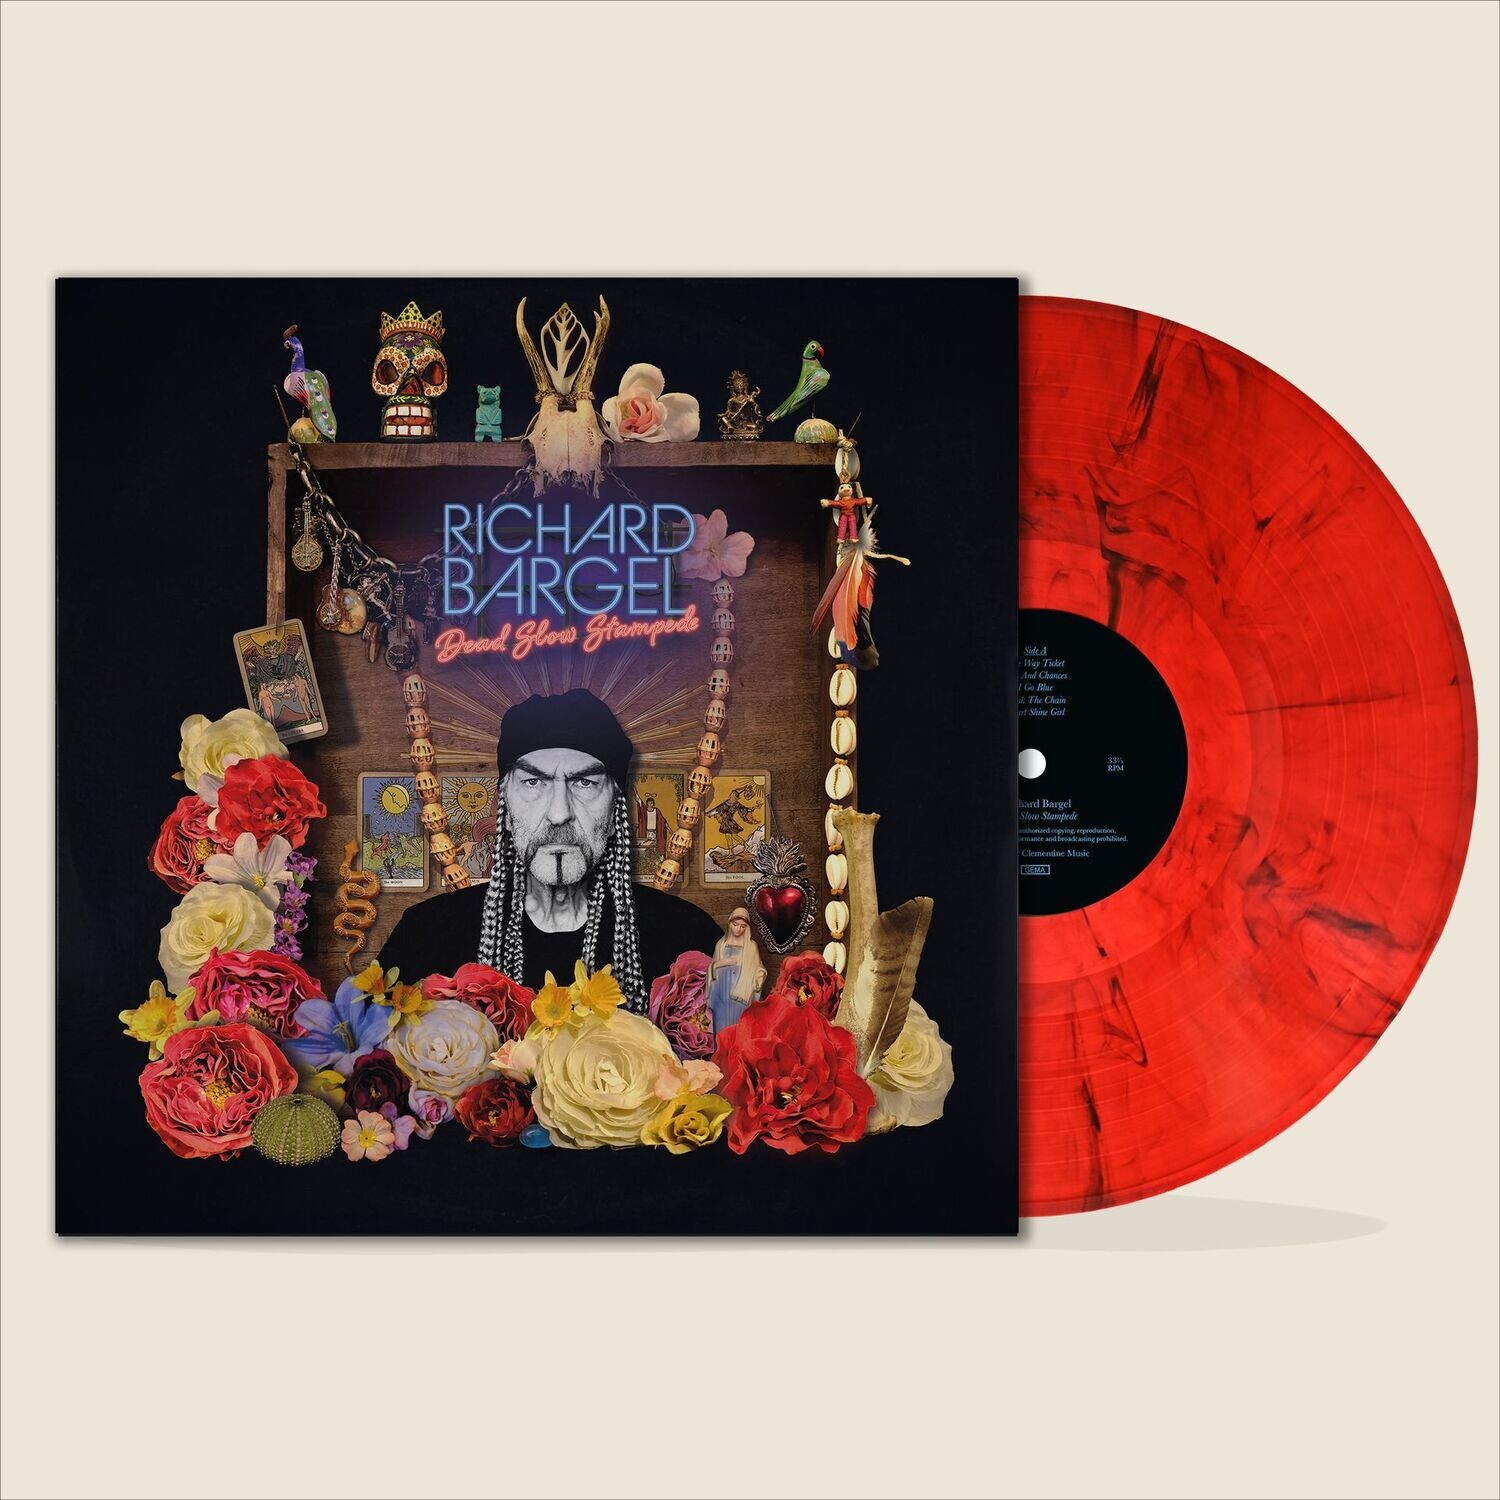 Richard Bargel - Dead Slow Stampede - Vinyl LP Trans. Red marbled Ltd. Ed. 140g